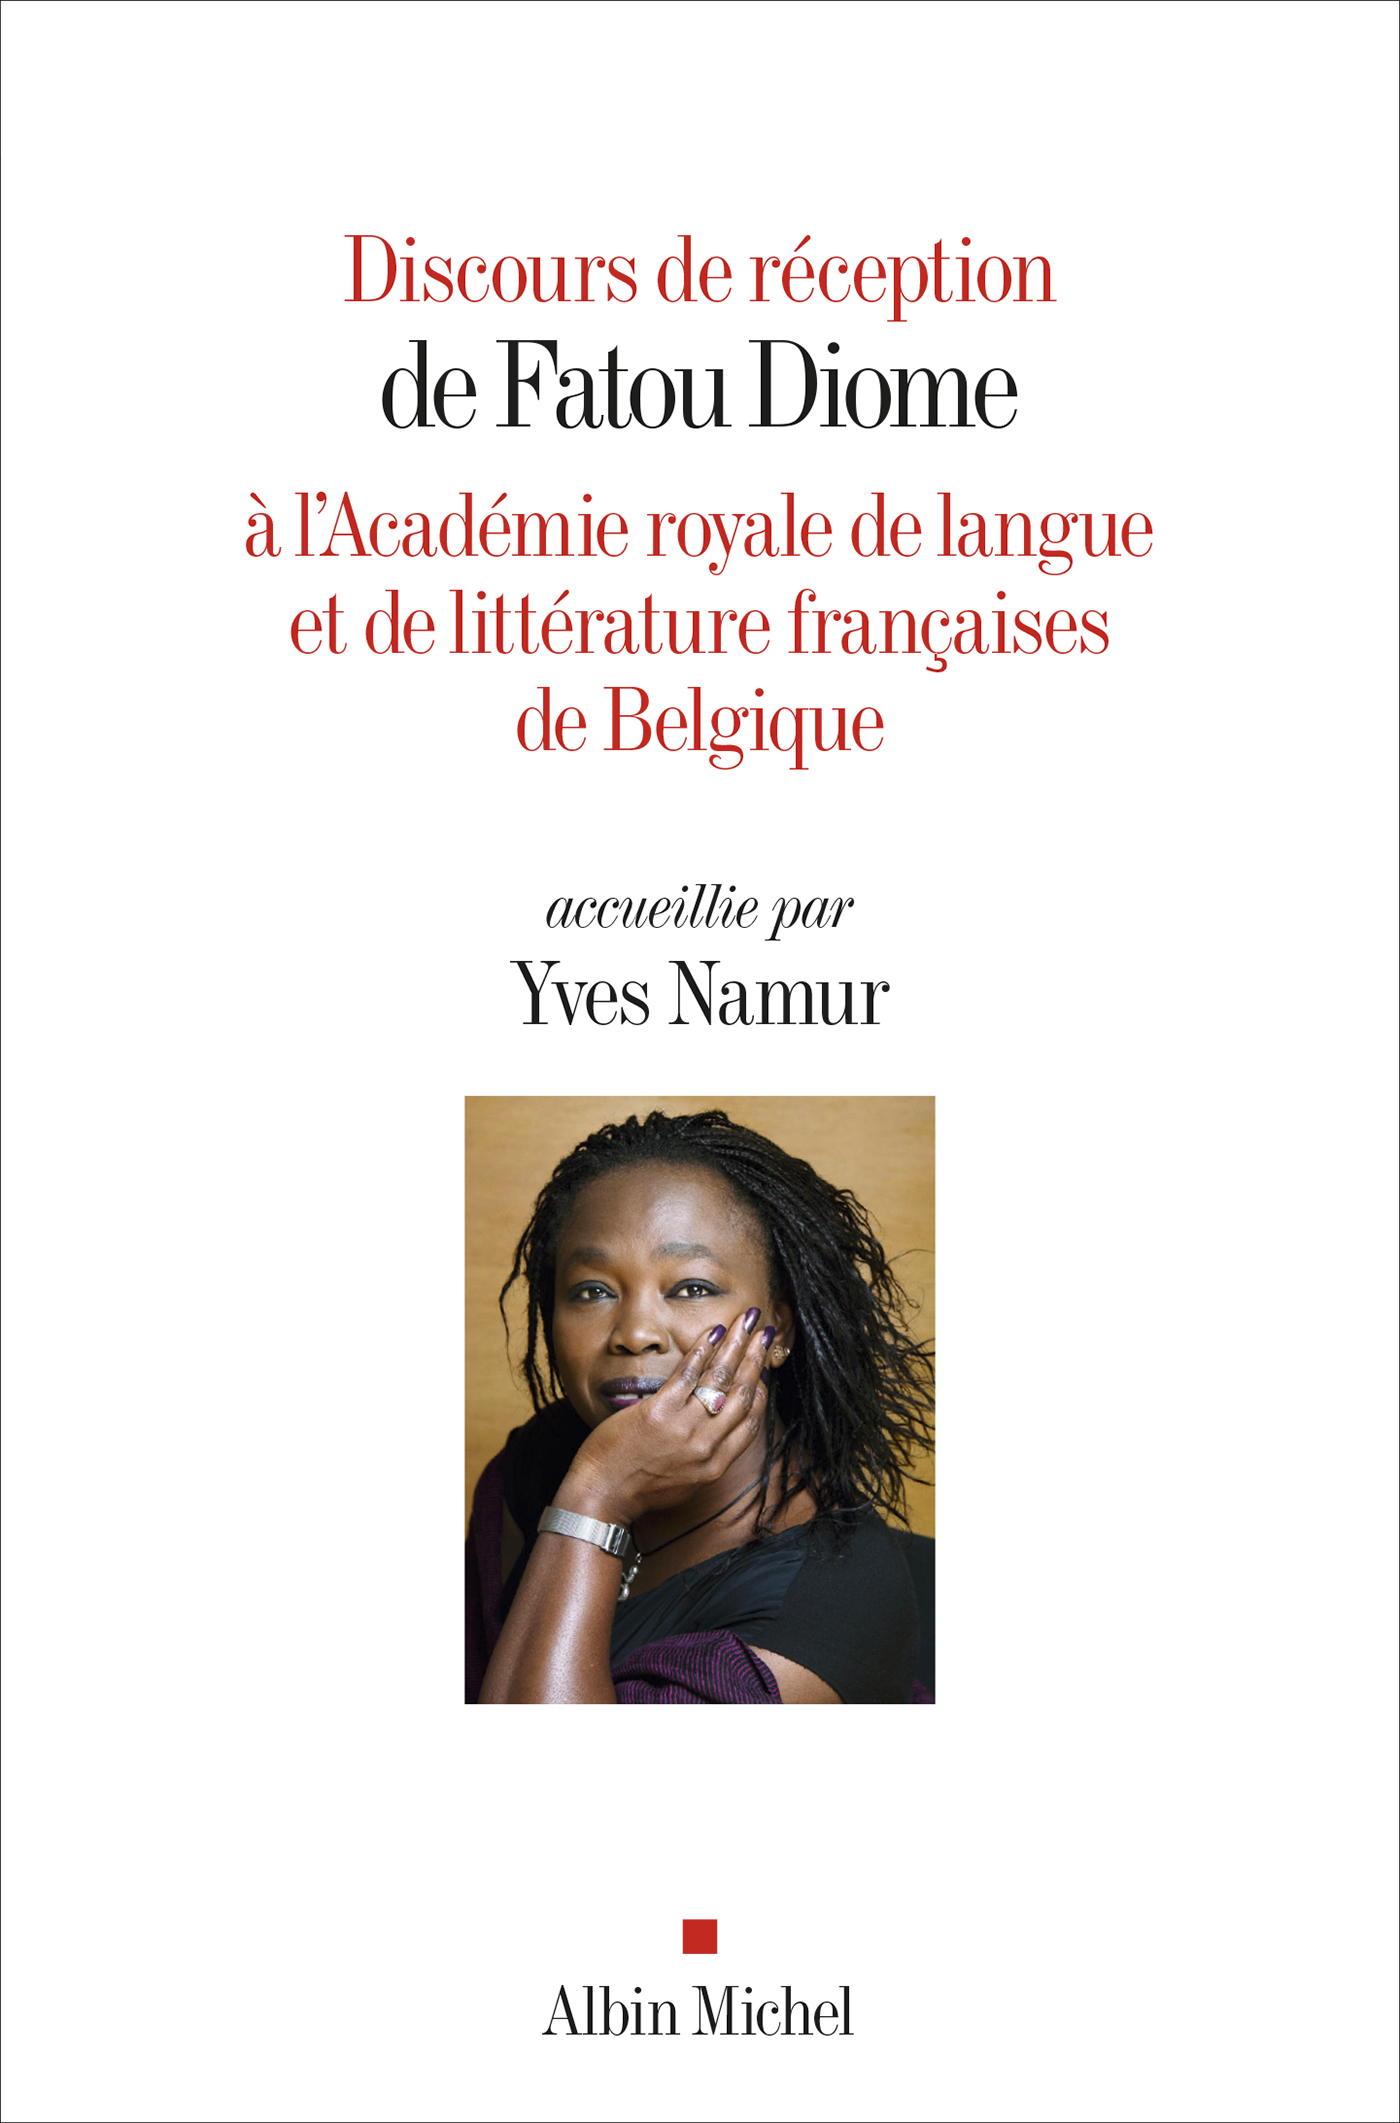 Couverture du livre Discours de réception de Fatou Diome à l'Académie royale de langue et de littérature françaises de Belgique